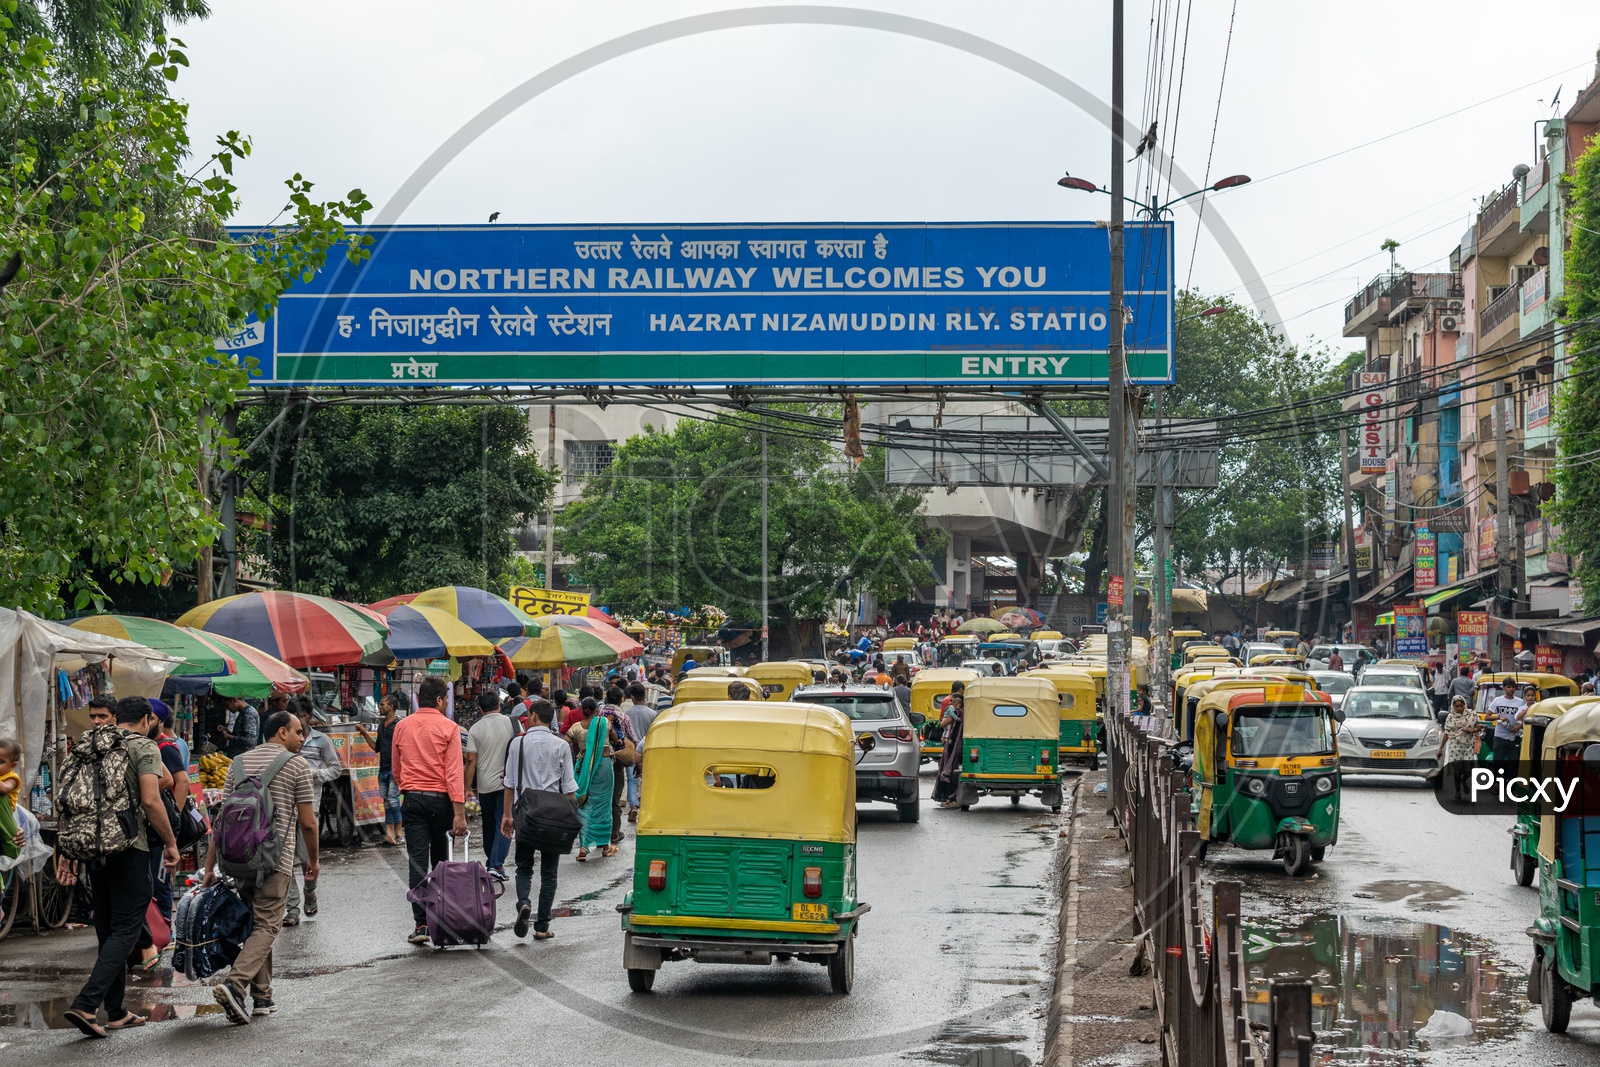 Entry at Hazrat Nizamuddin railway station, Delhi